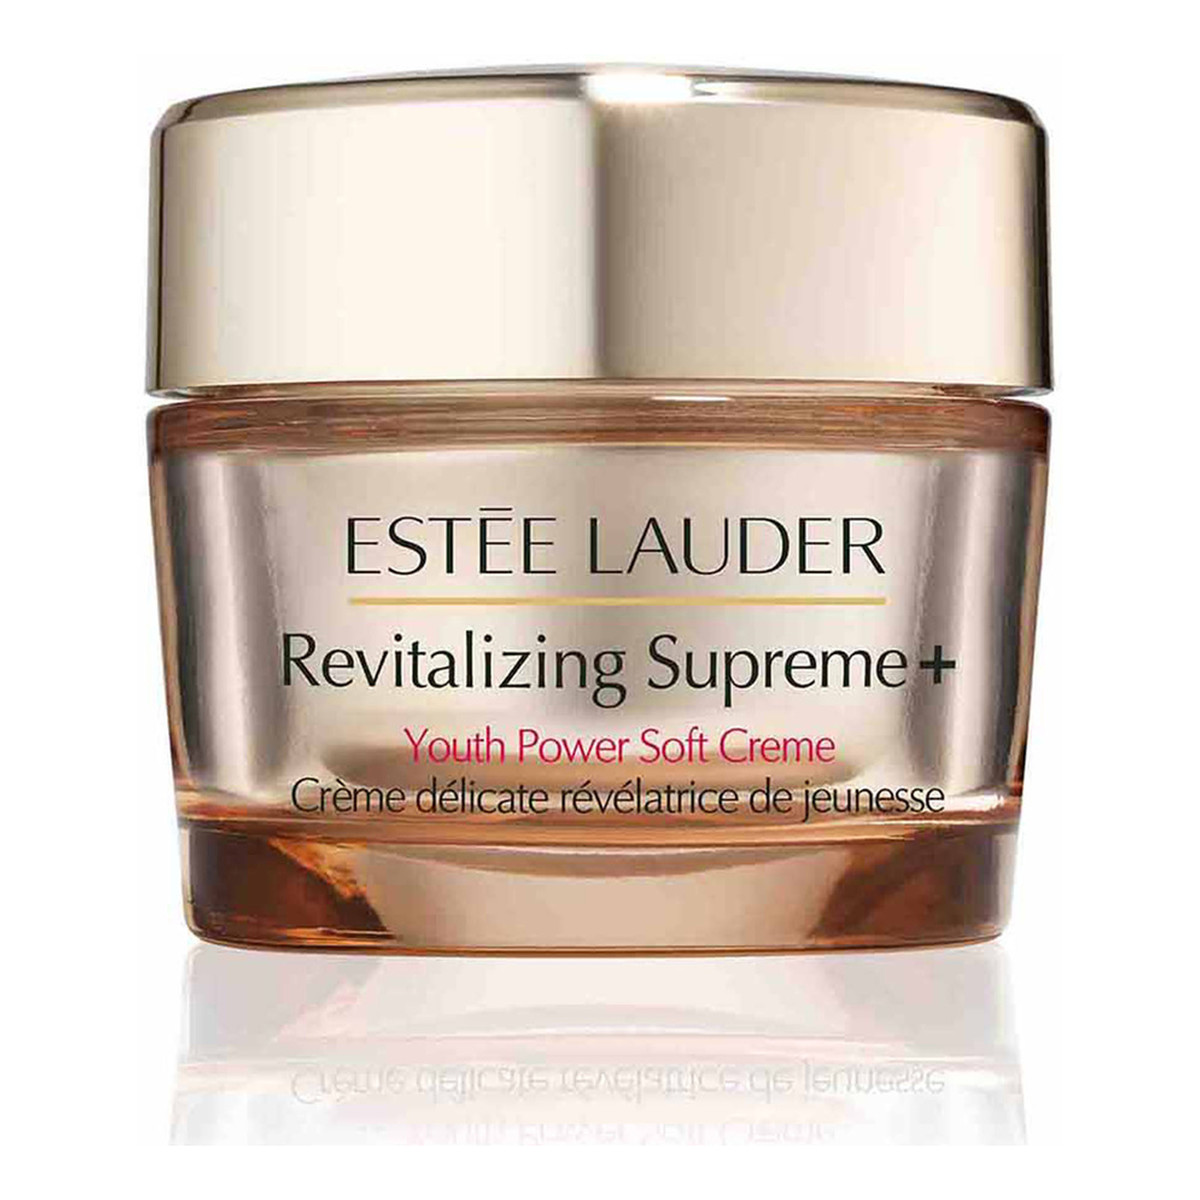 Estee Lauder Revitalizing Supreme+ Youth Power Soft Creme lekki rewitalizujący krem przeciwzmarszczkowy 50ml